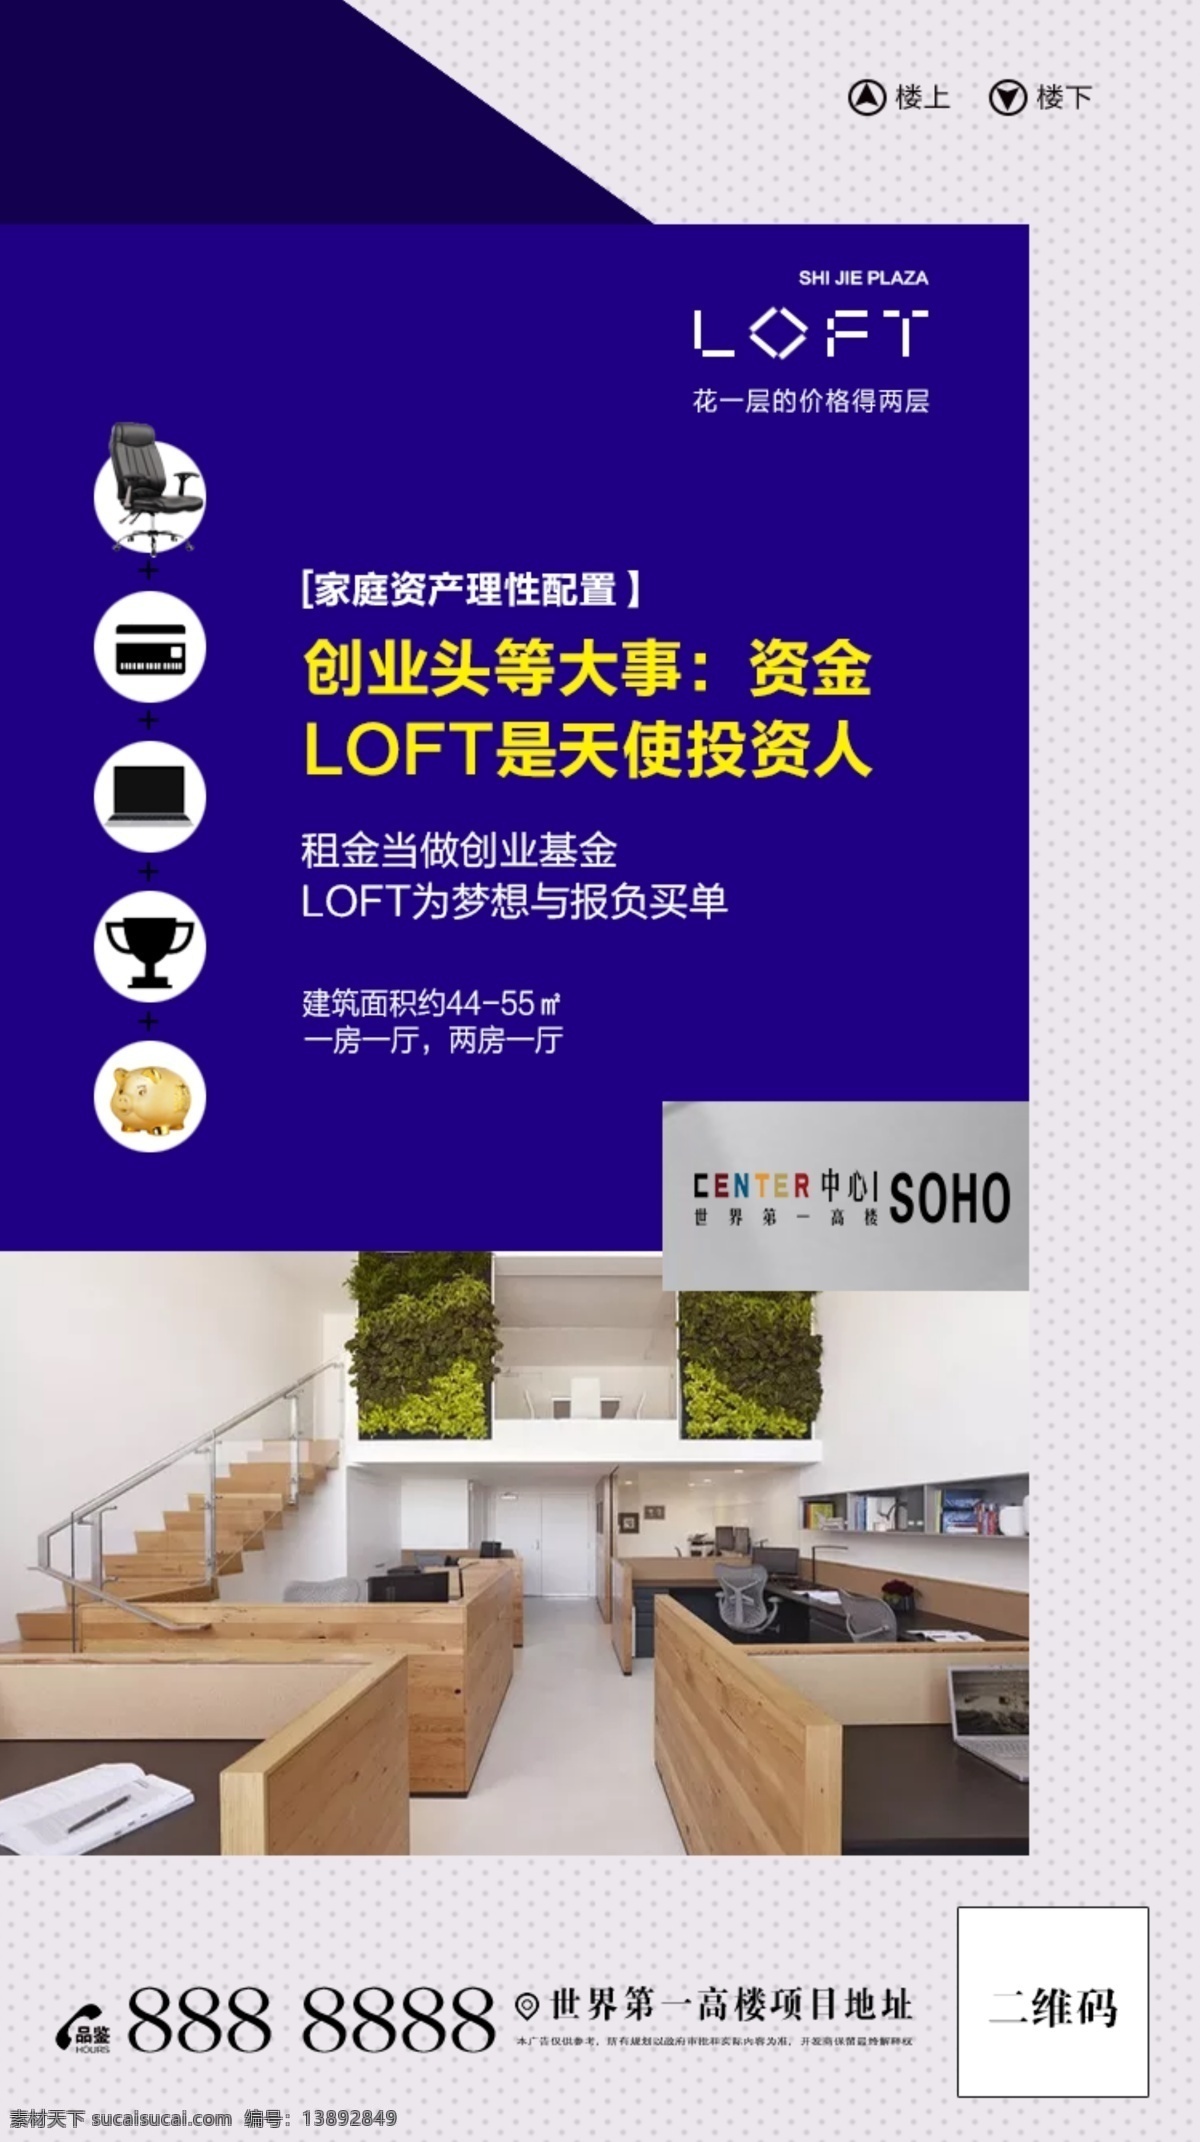 loft 微 信 宣传 图 一层投入 双享空间 双重收益 蓝色 效果图 配套